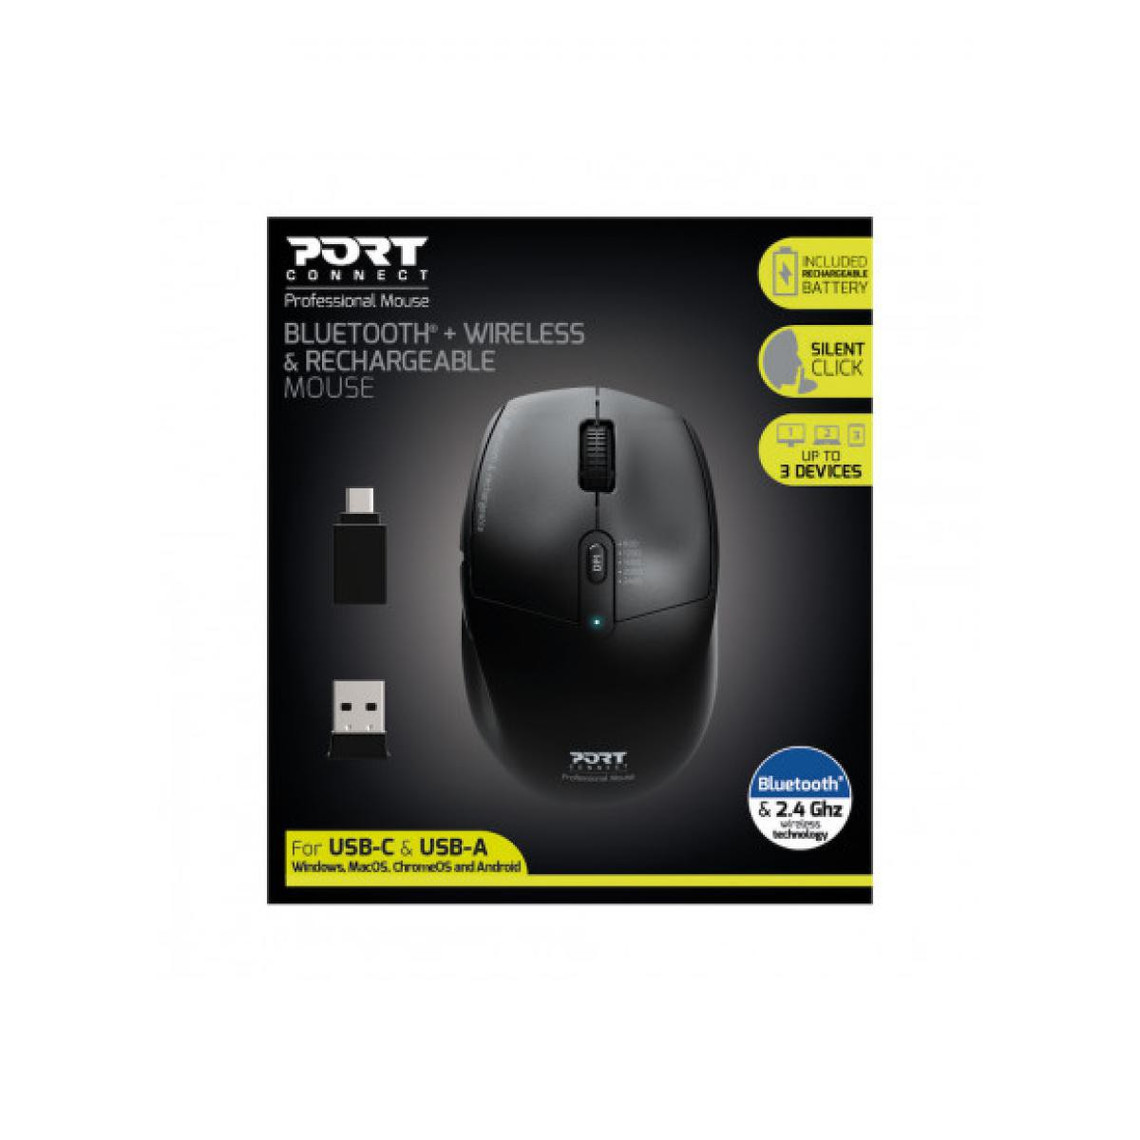 Souris Port Design Mouse Bluetooth Combo Pro Mouse Bluetooth Combo Pro